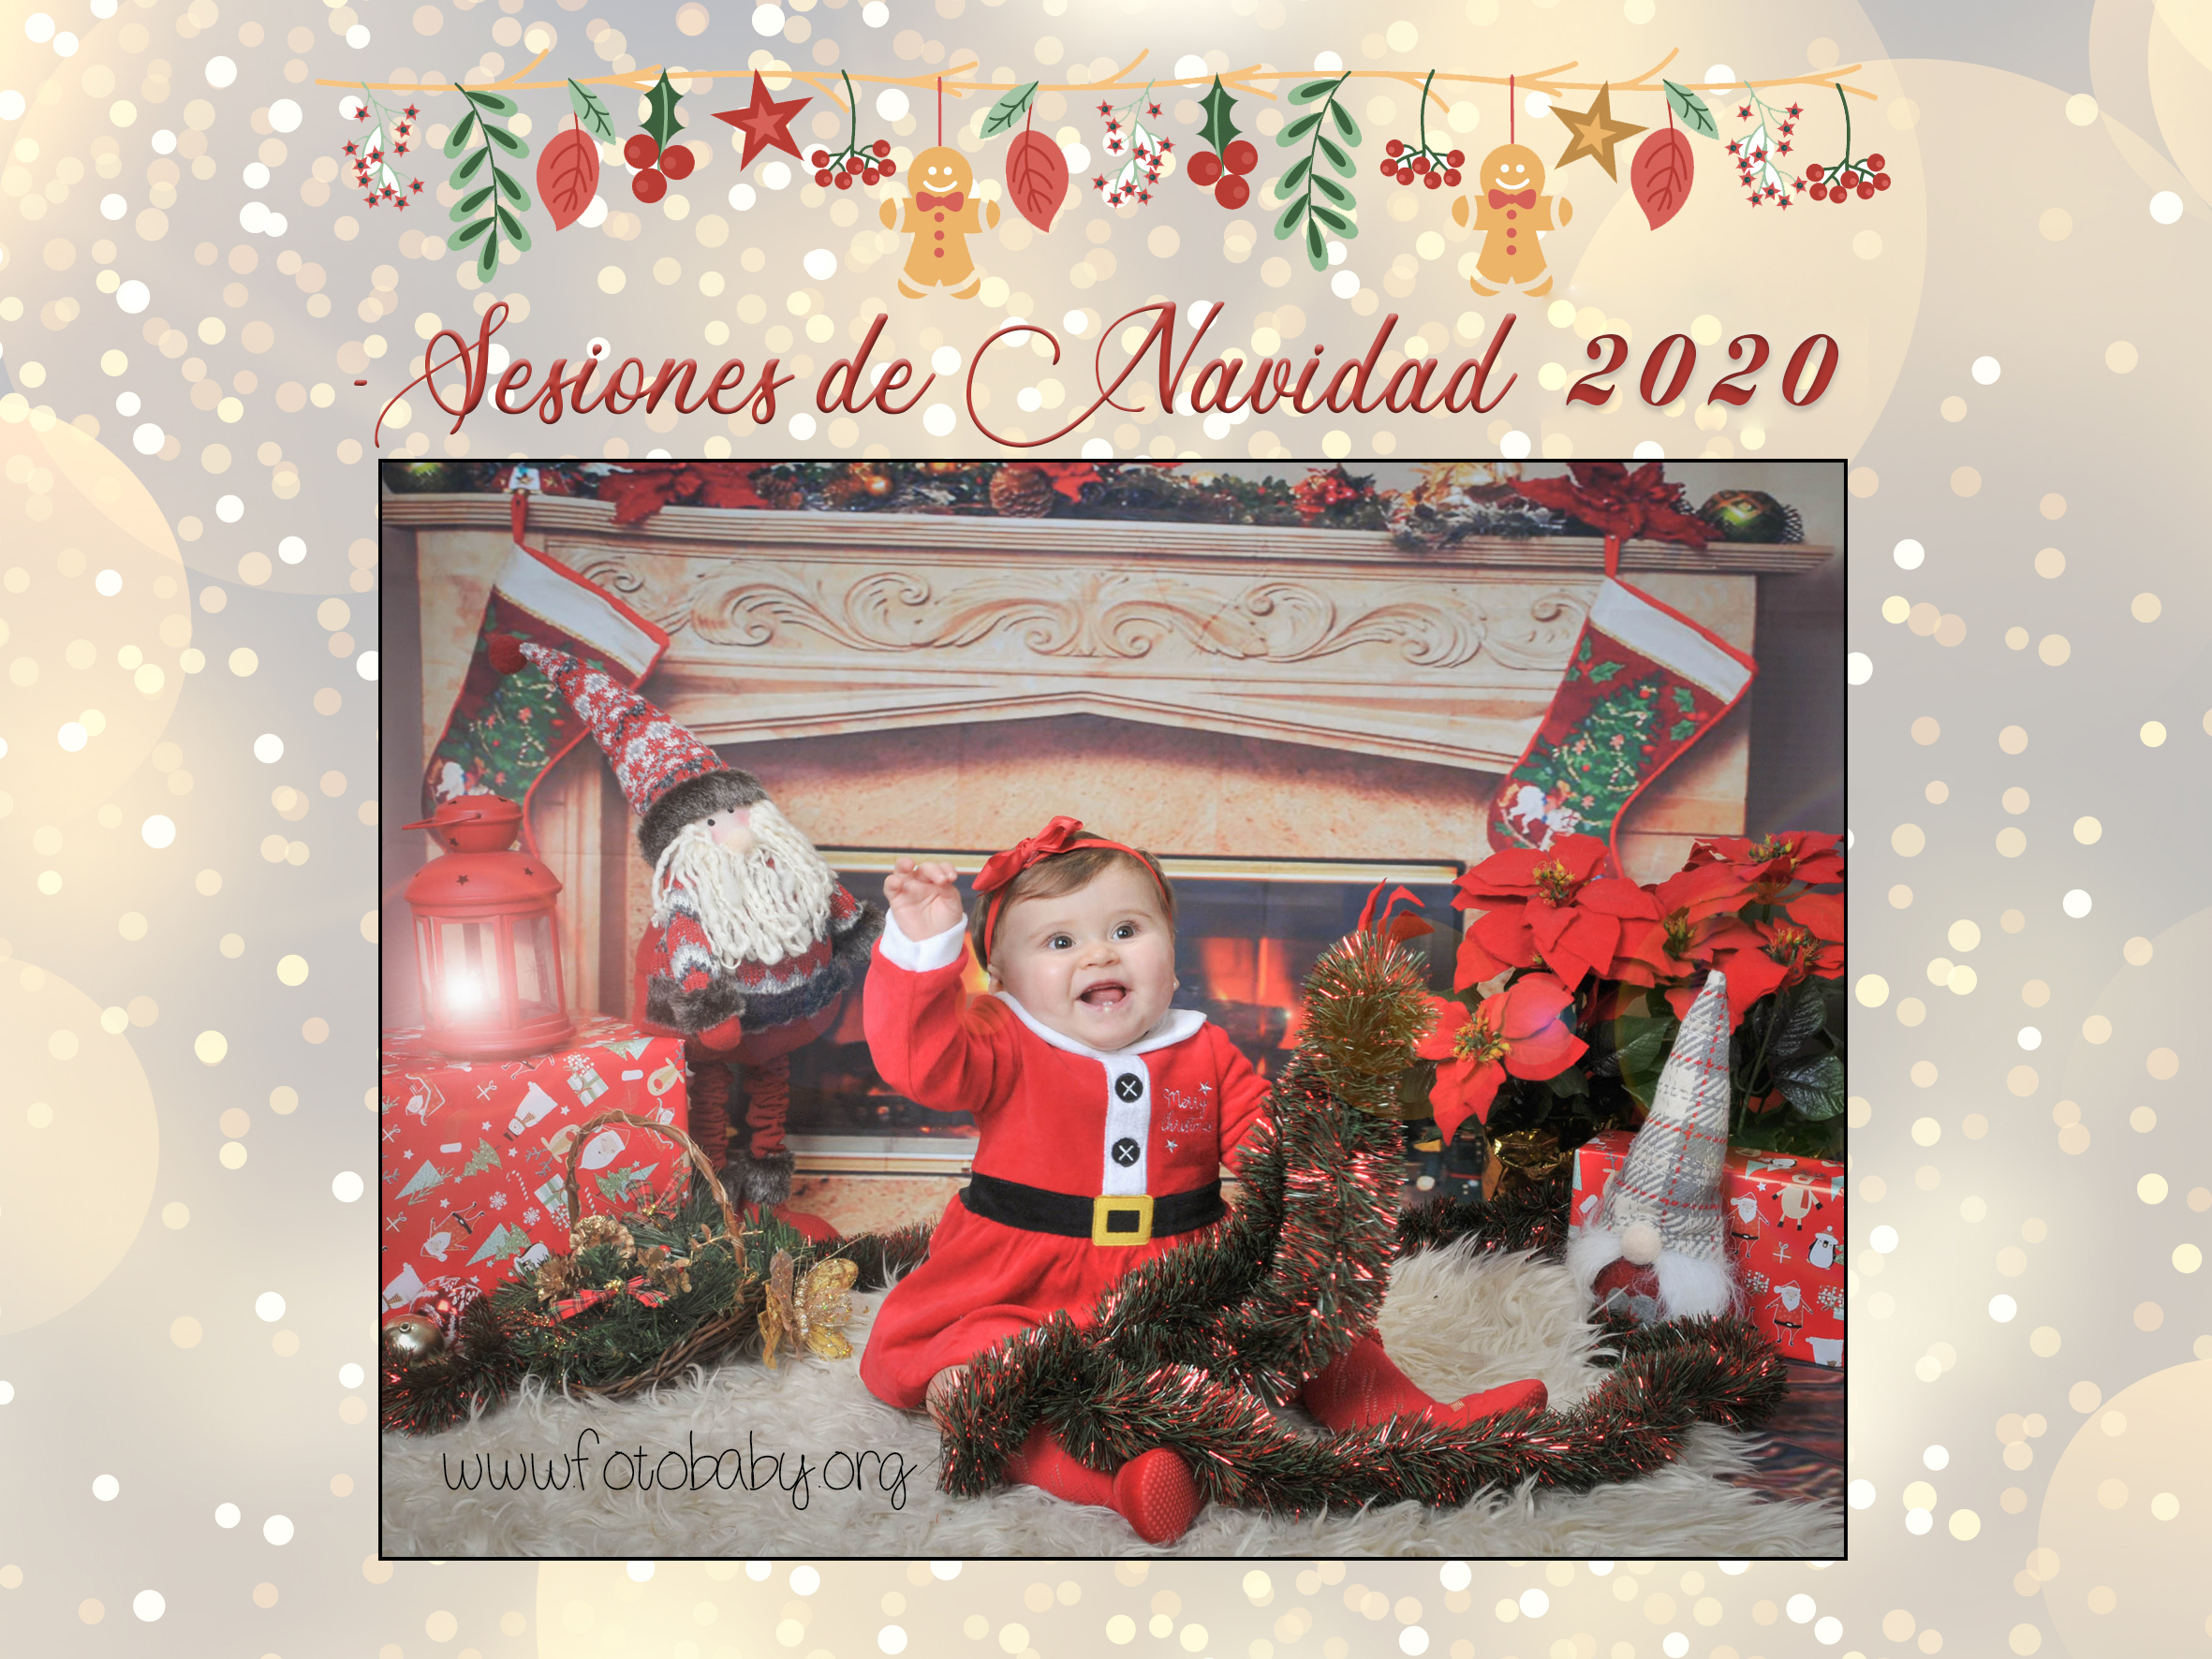 Sesiones de Navidad en Granada 2020